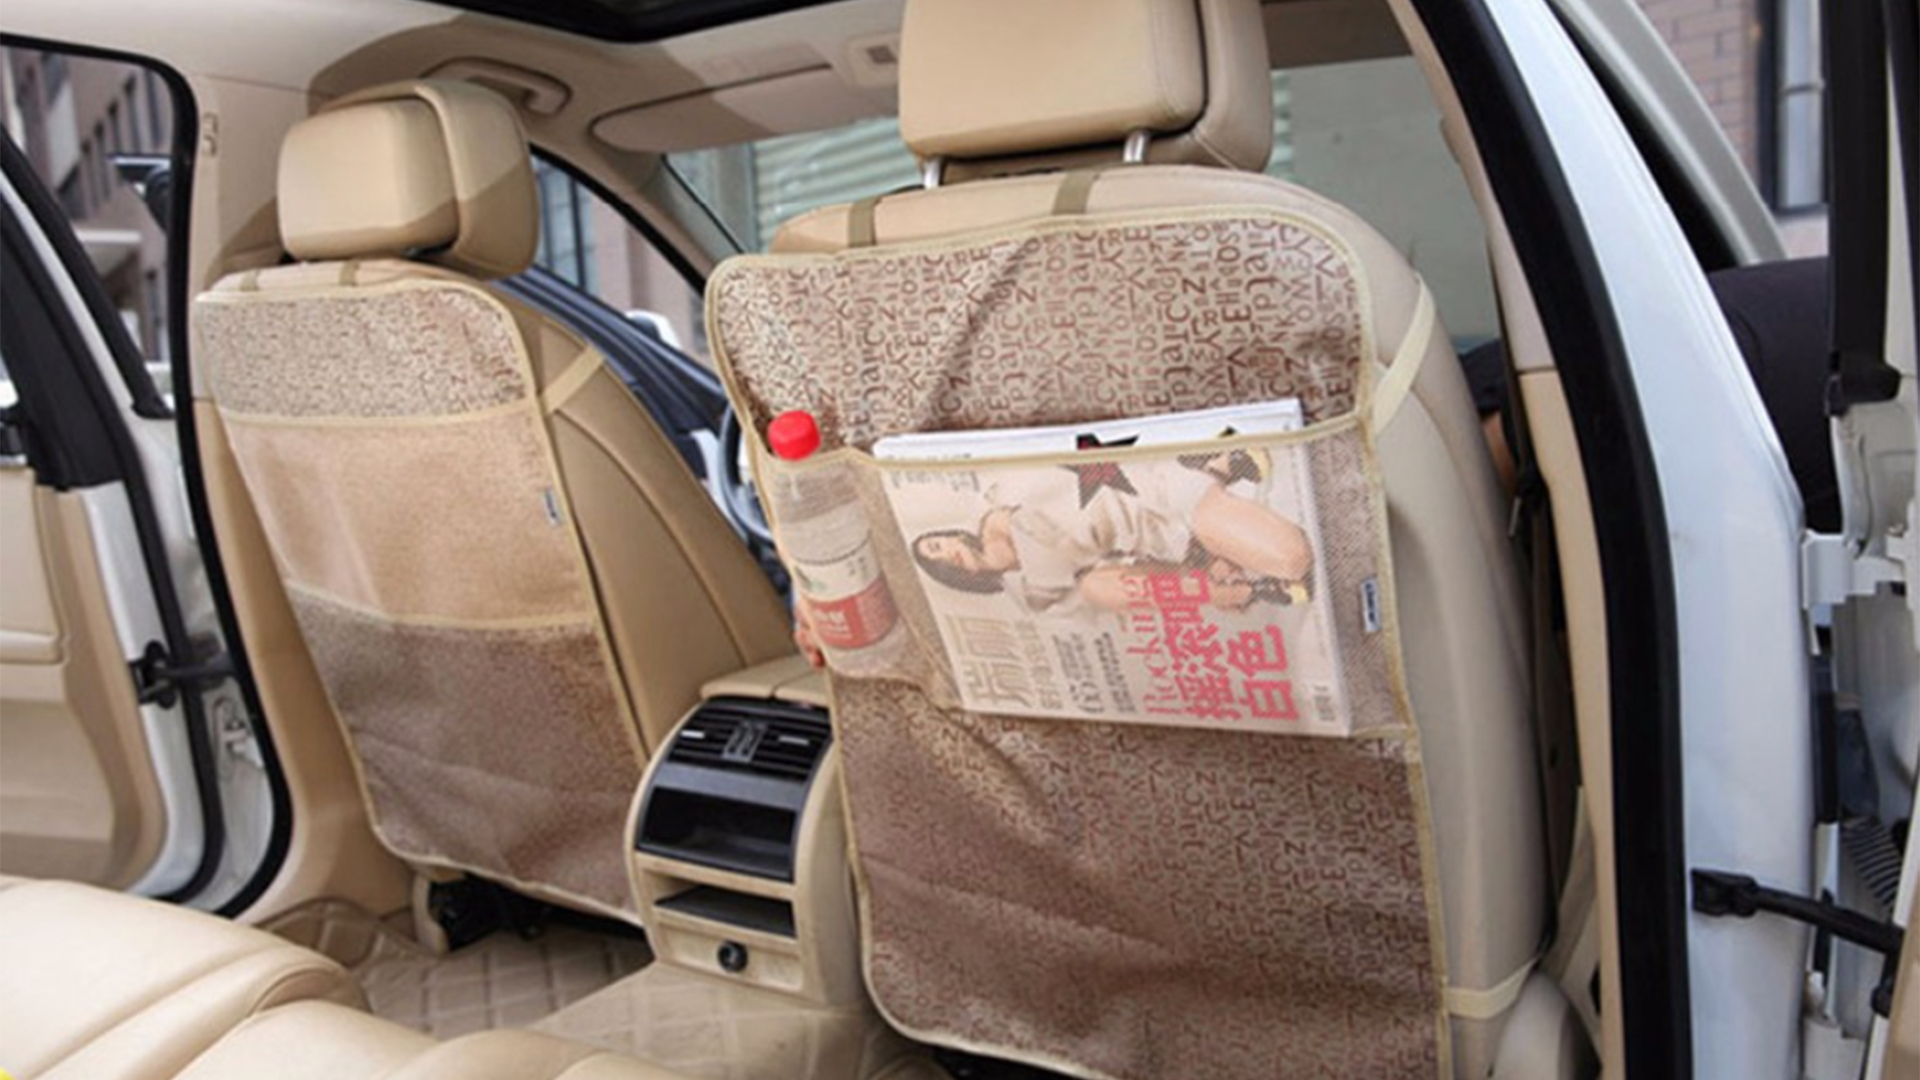 Защита на спинку сидения авто